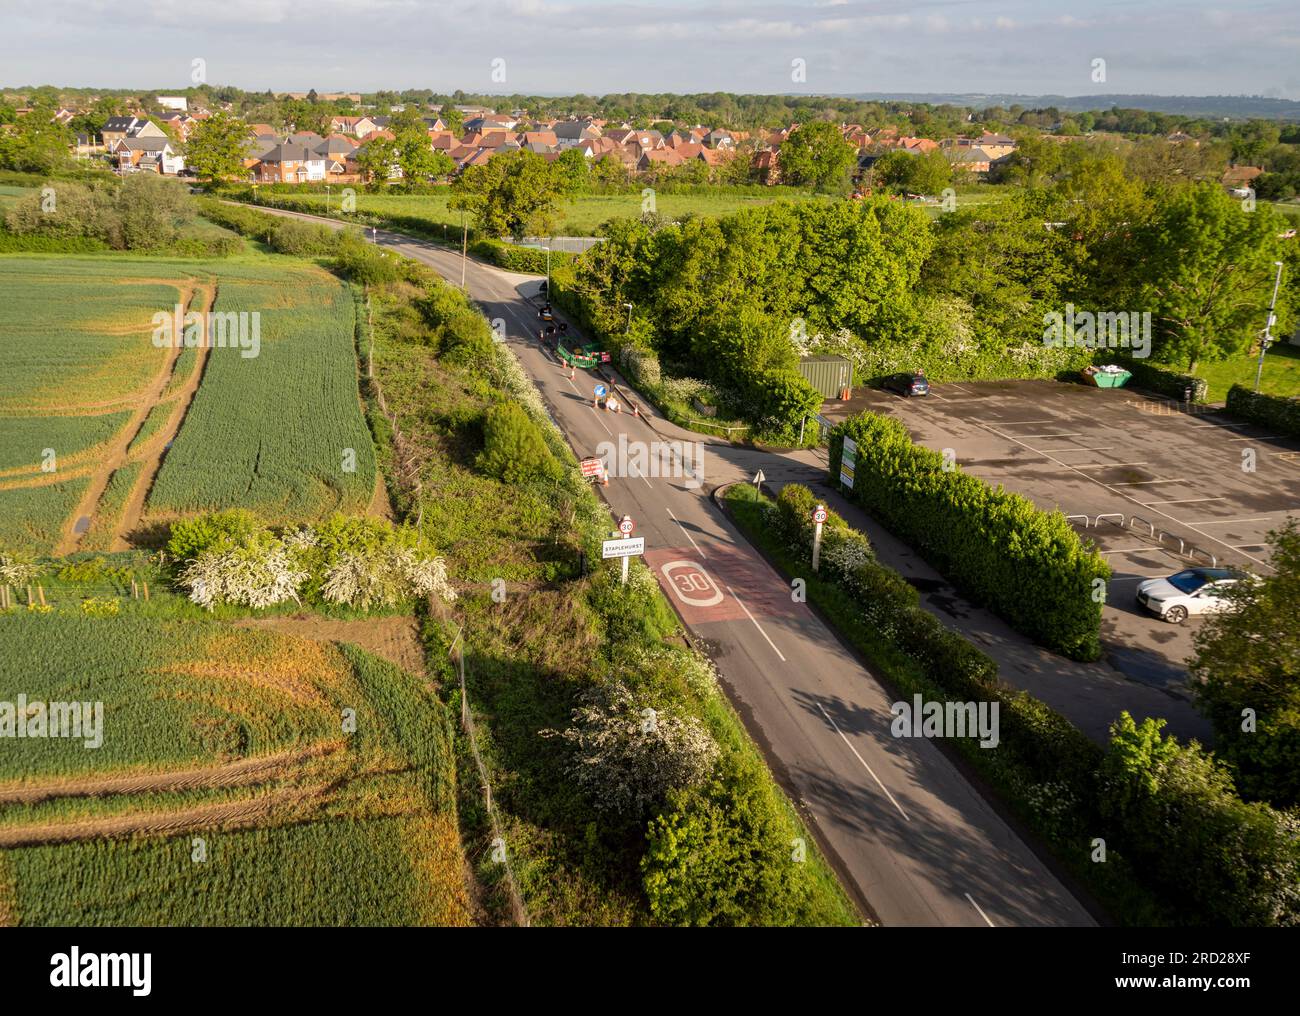 Aerial view of the villge of Staplehurst, Kent, UK Stock Photo